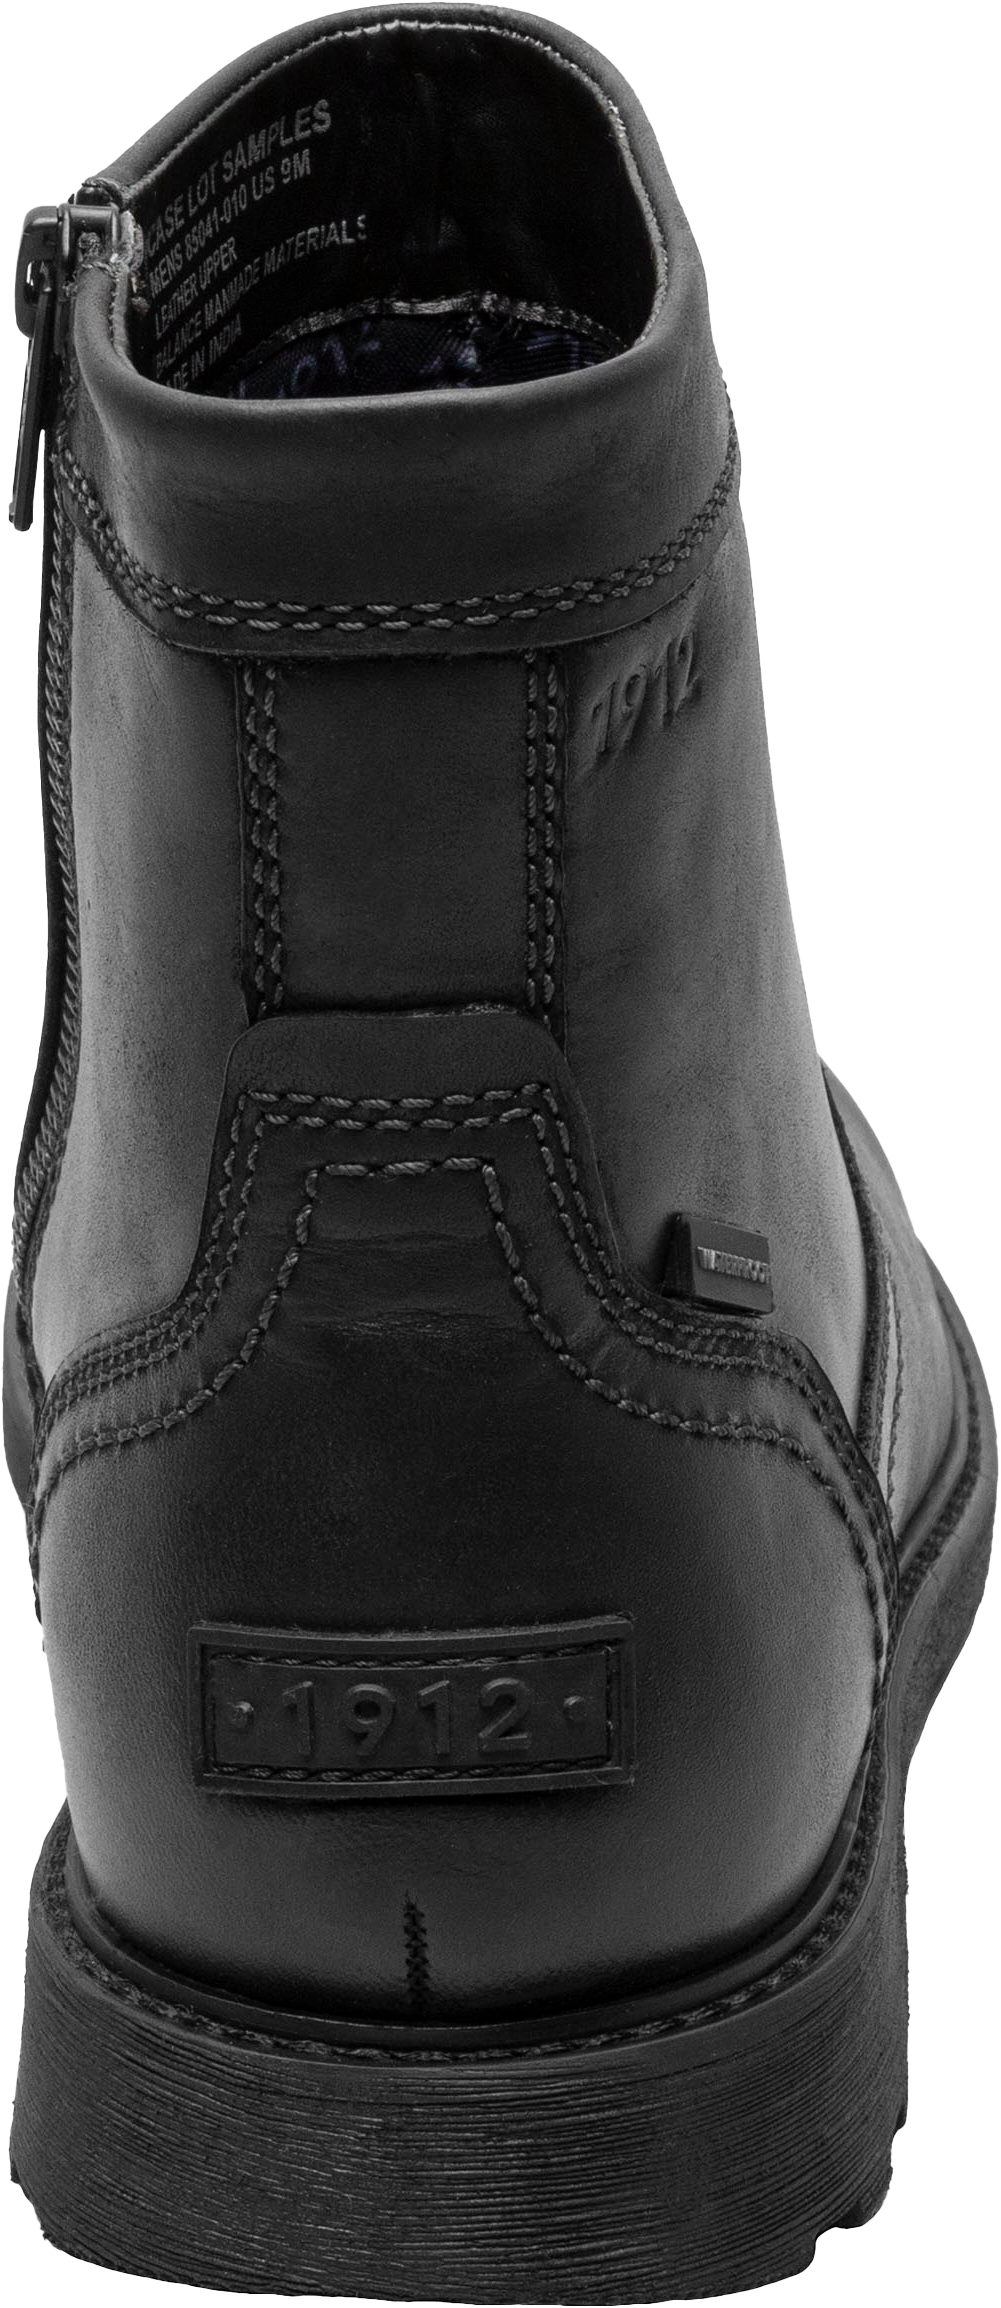 Waterproof Plain Toe Side Zip Boots